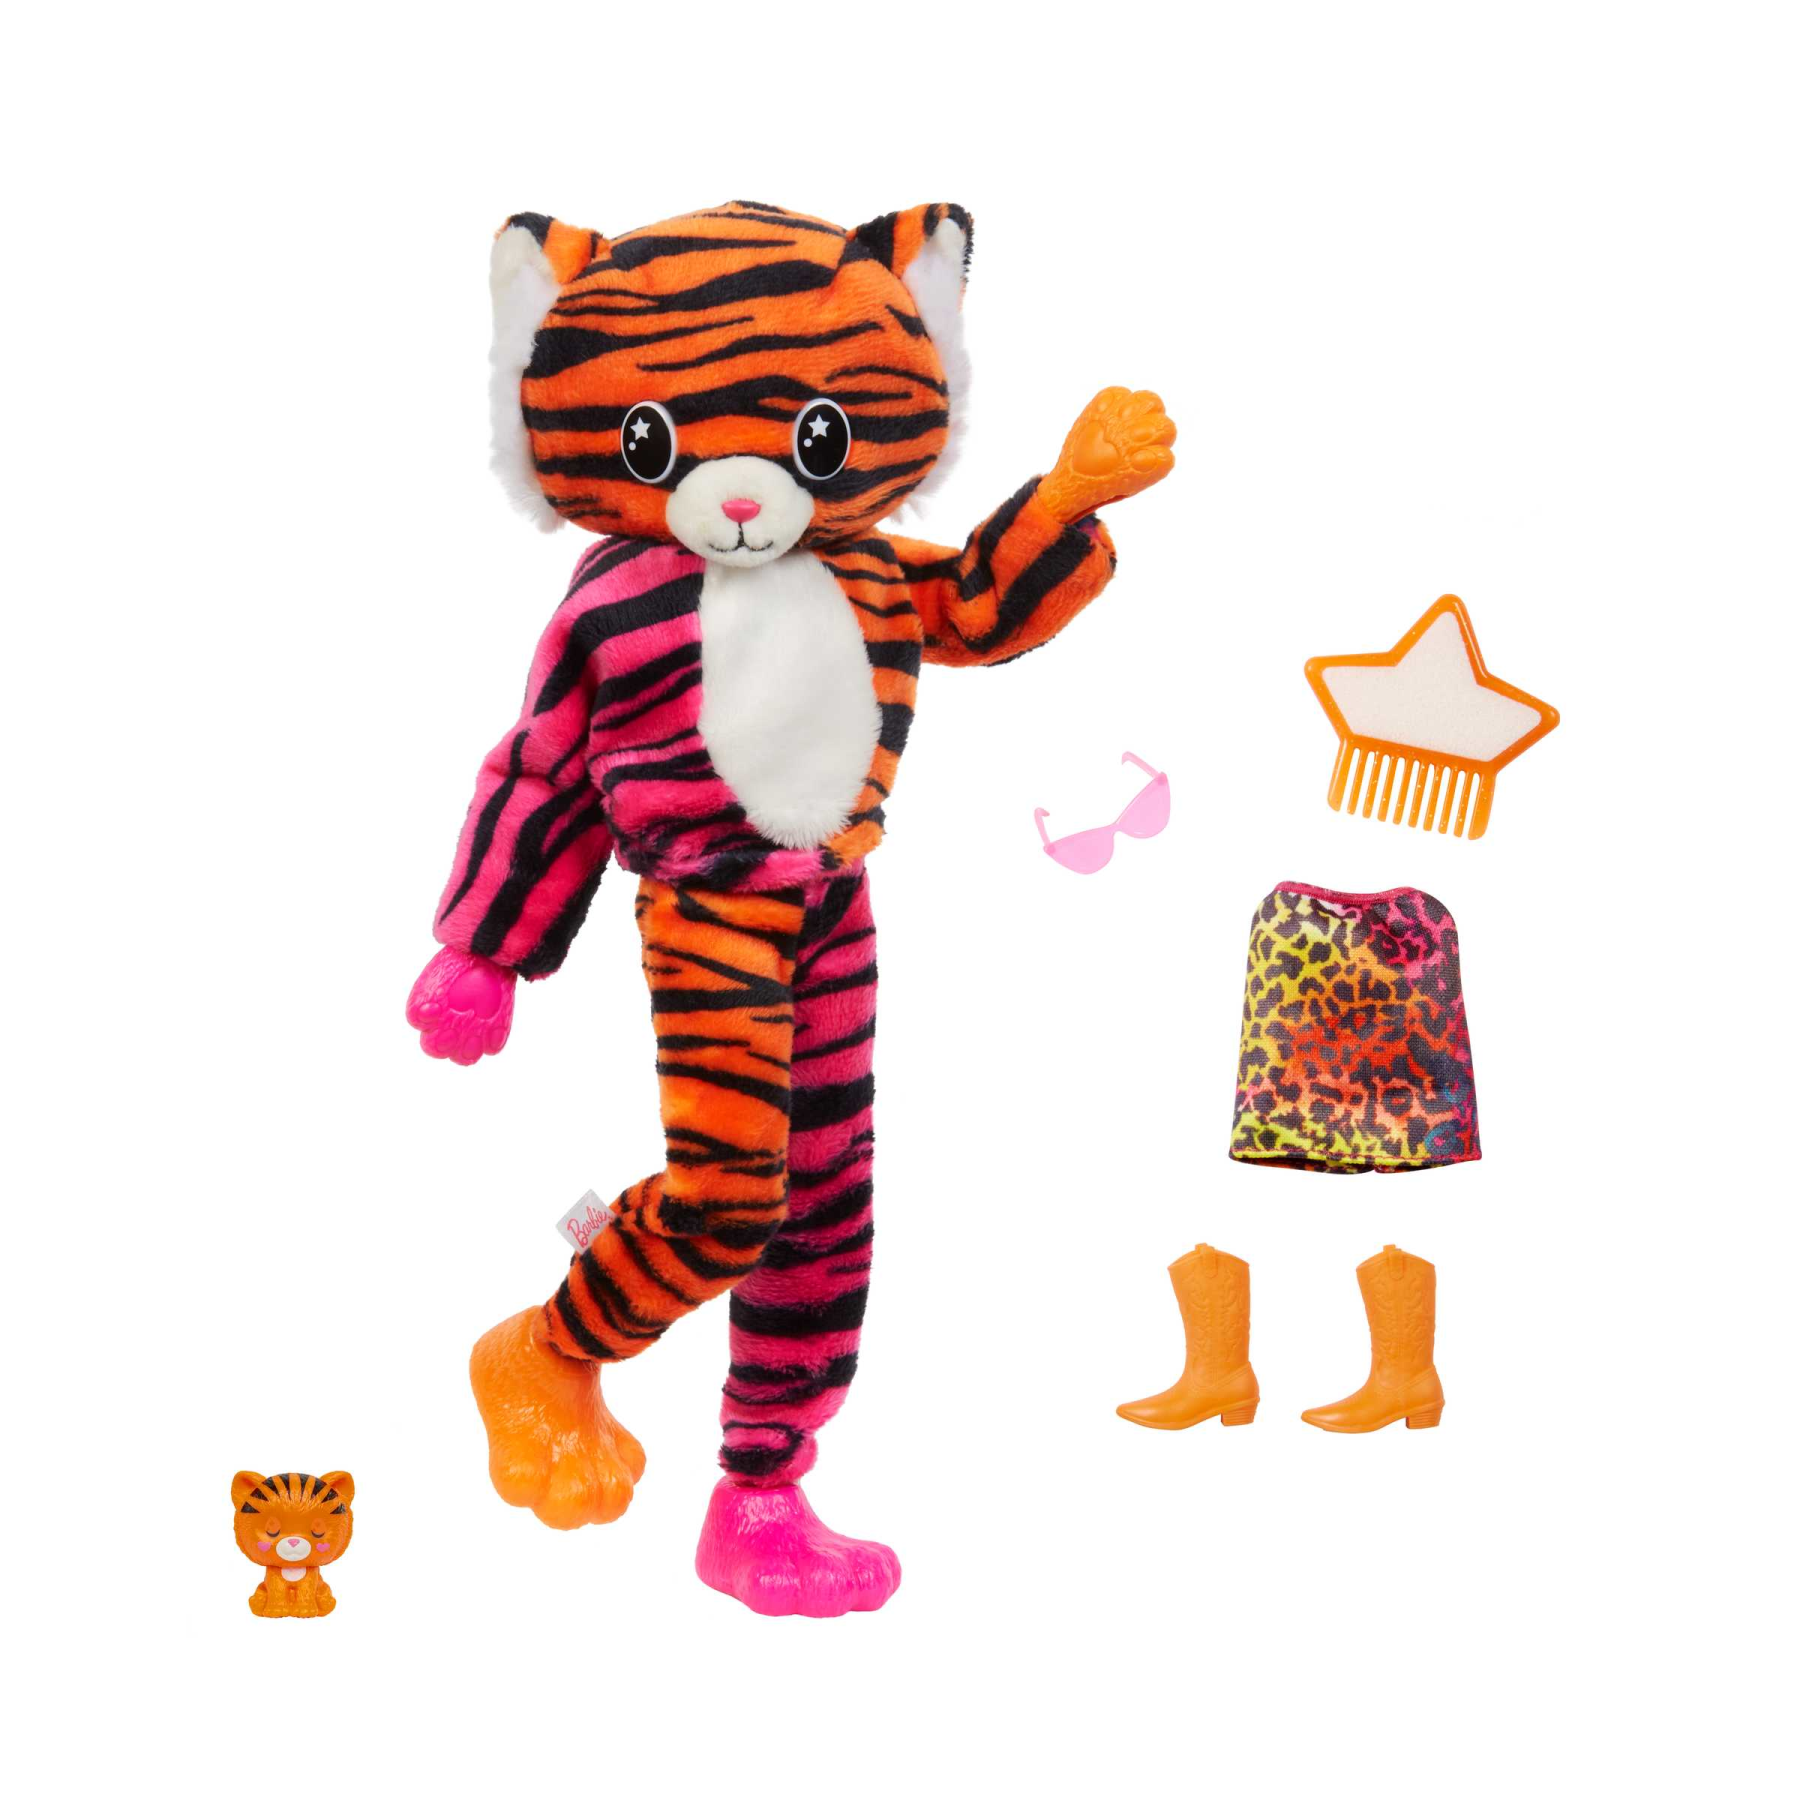 Costume da tigre per bambino